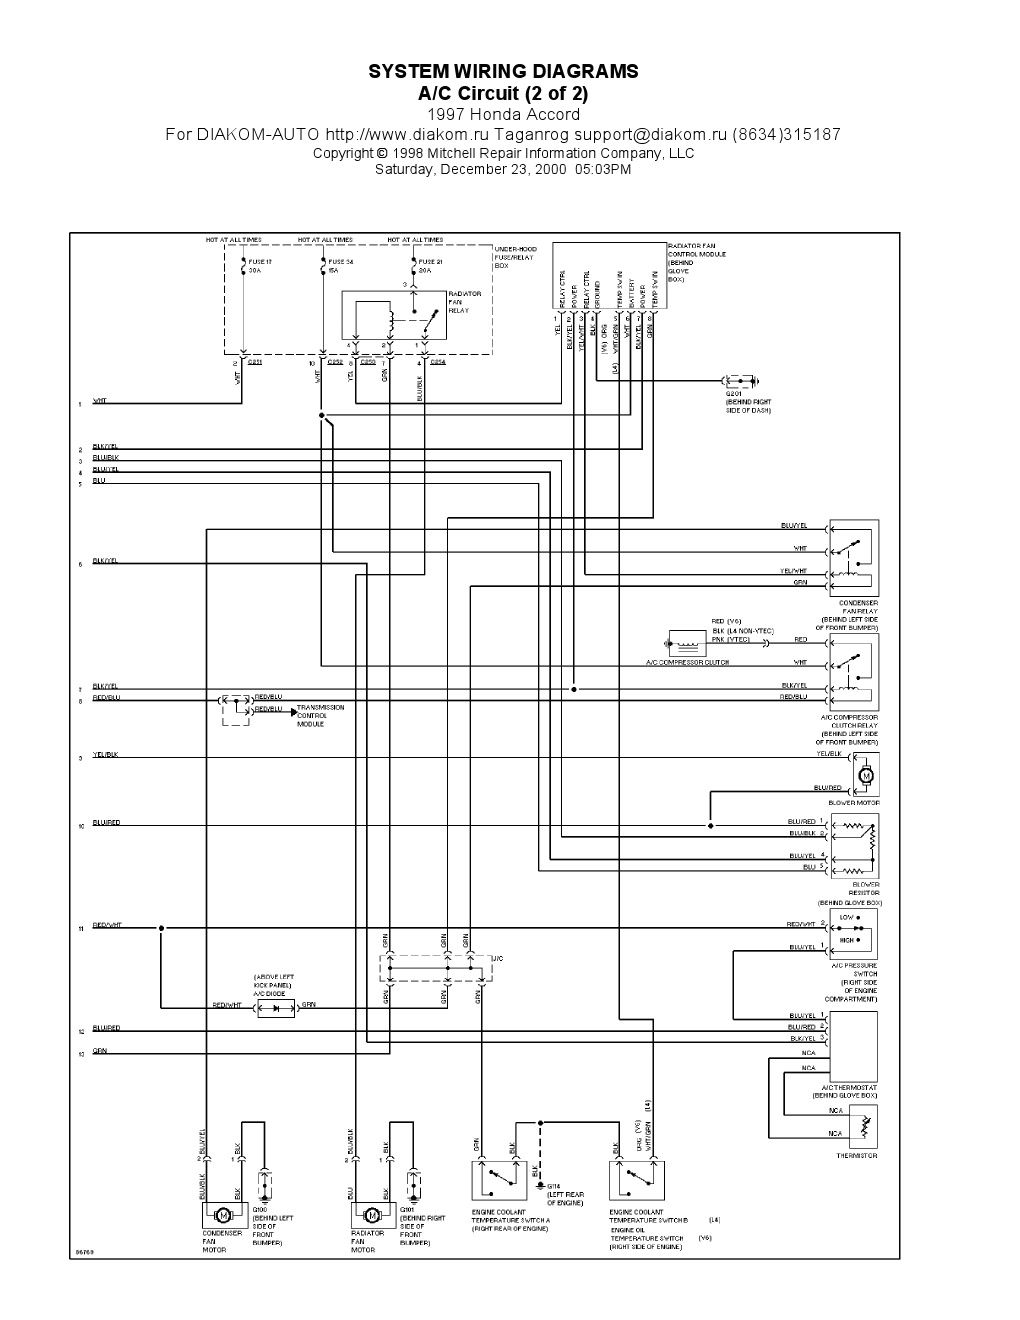 97 accord wiring diagram wiring diagram name 1997 honda accord wiring harness diagram wiring diagrams for